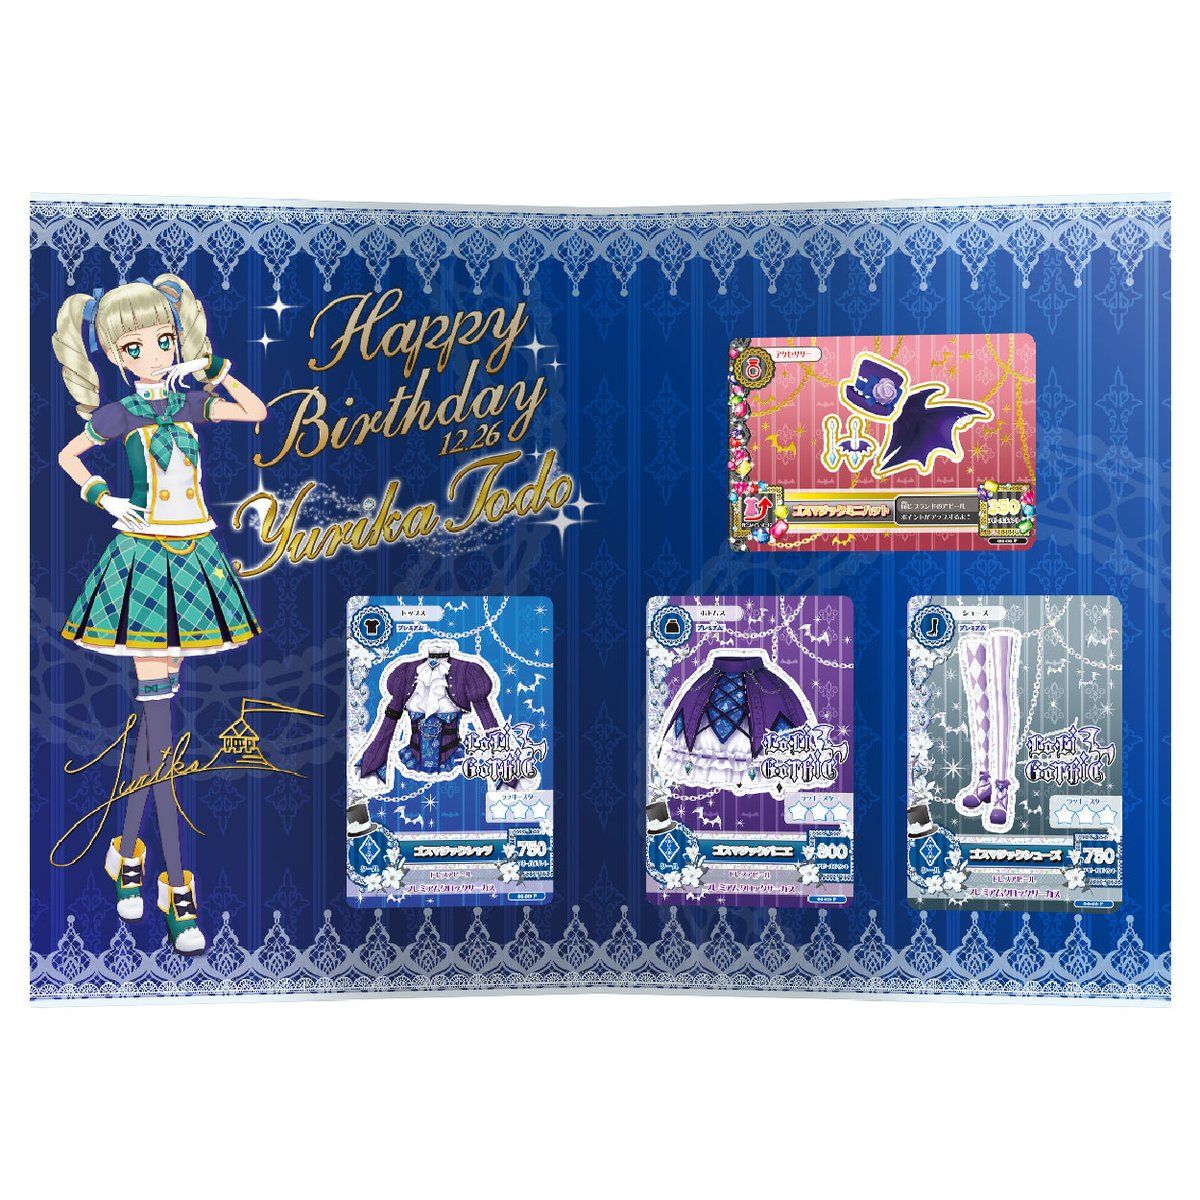 アイカツ!藤堂ユリカ Premium Birthday Box birthday-